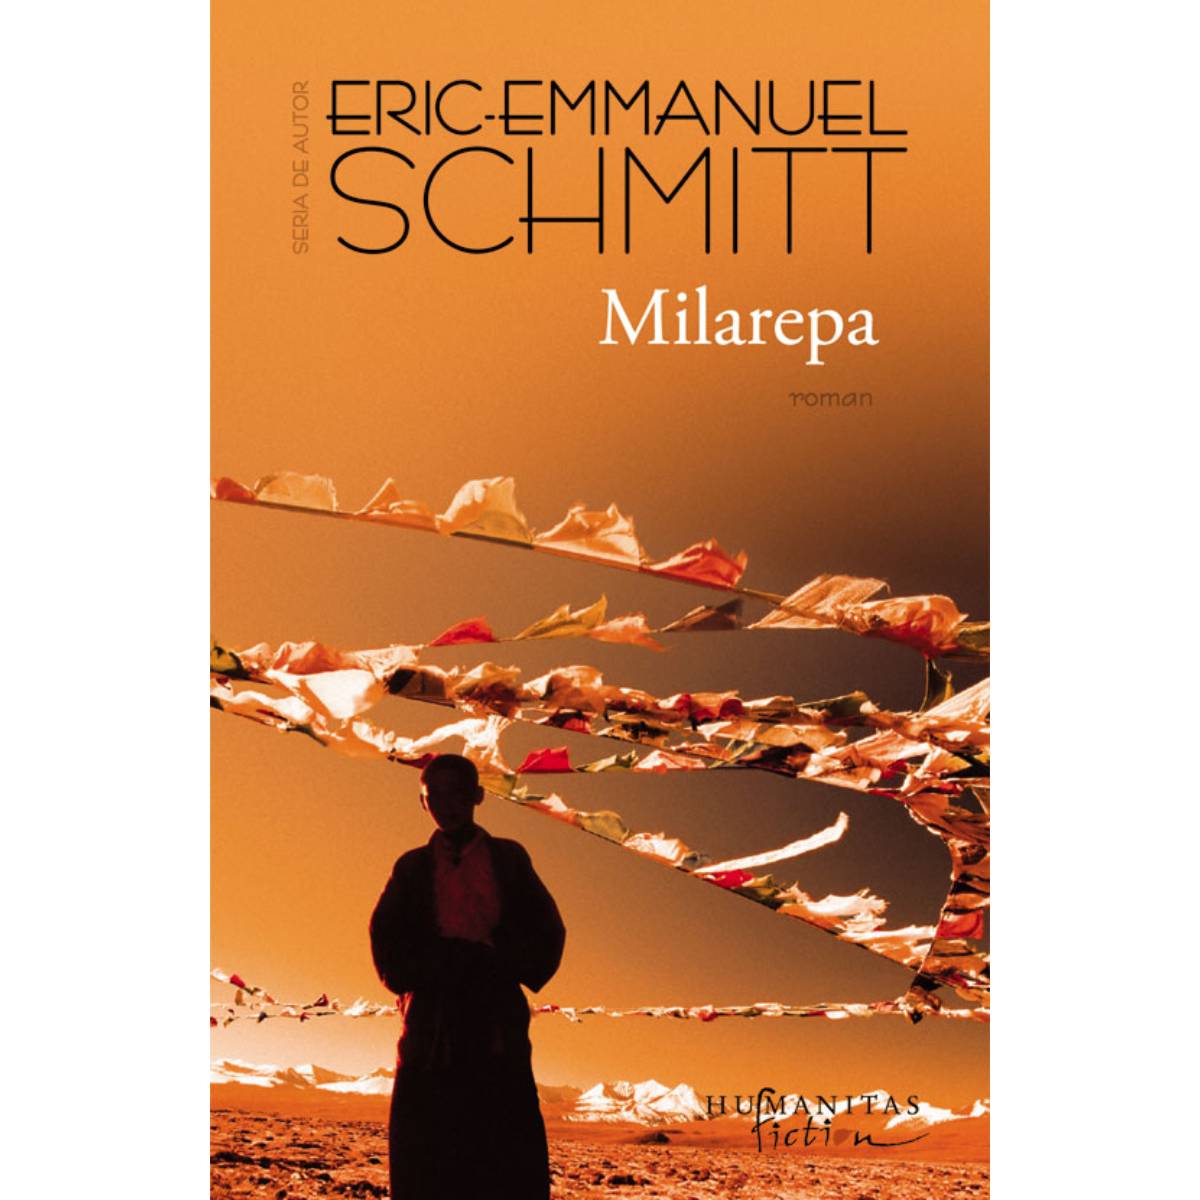 Milarepa, Eric-Emmanuel Schmitt